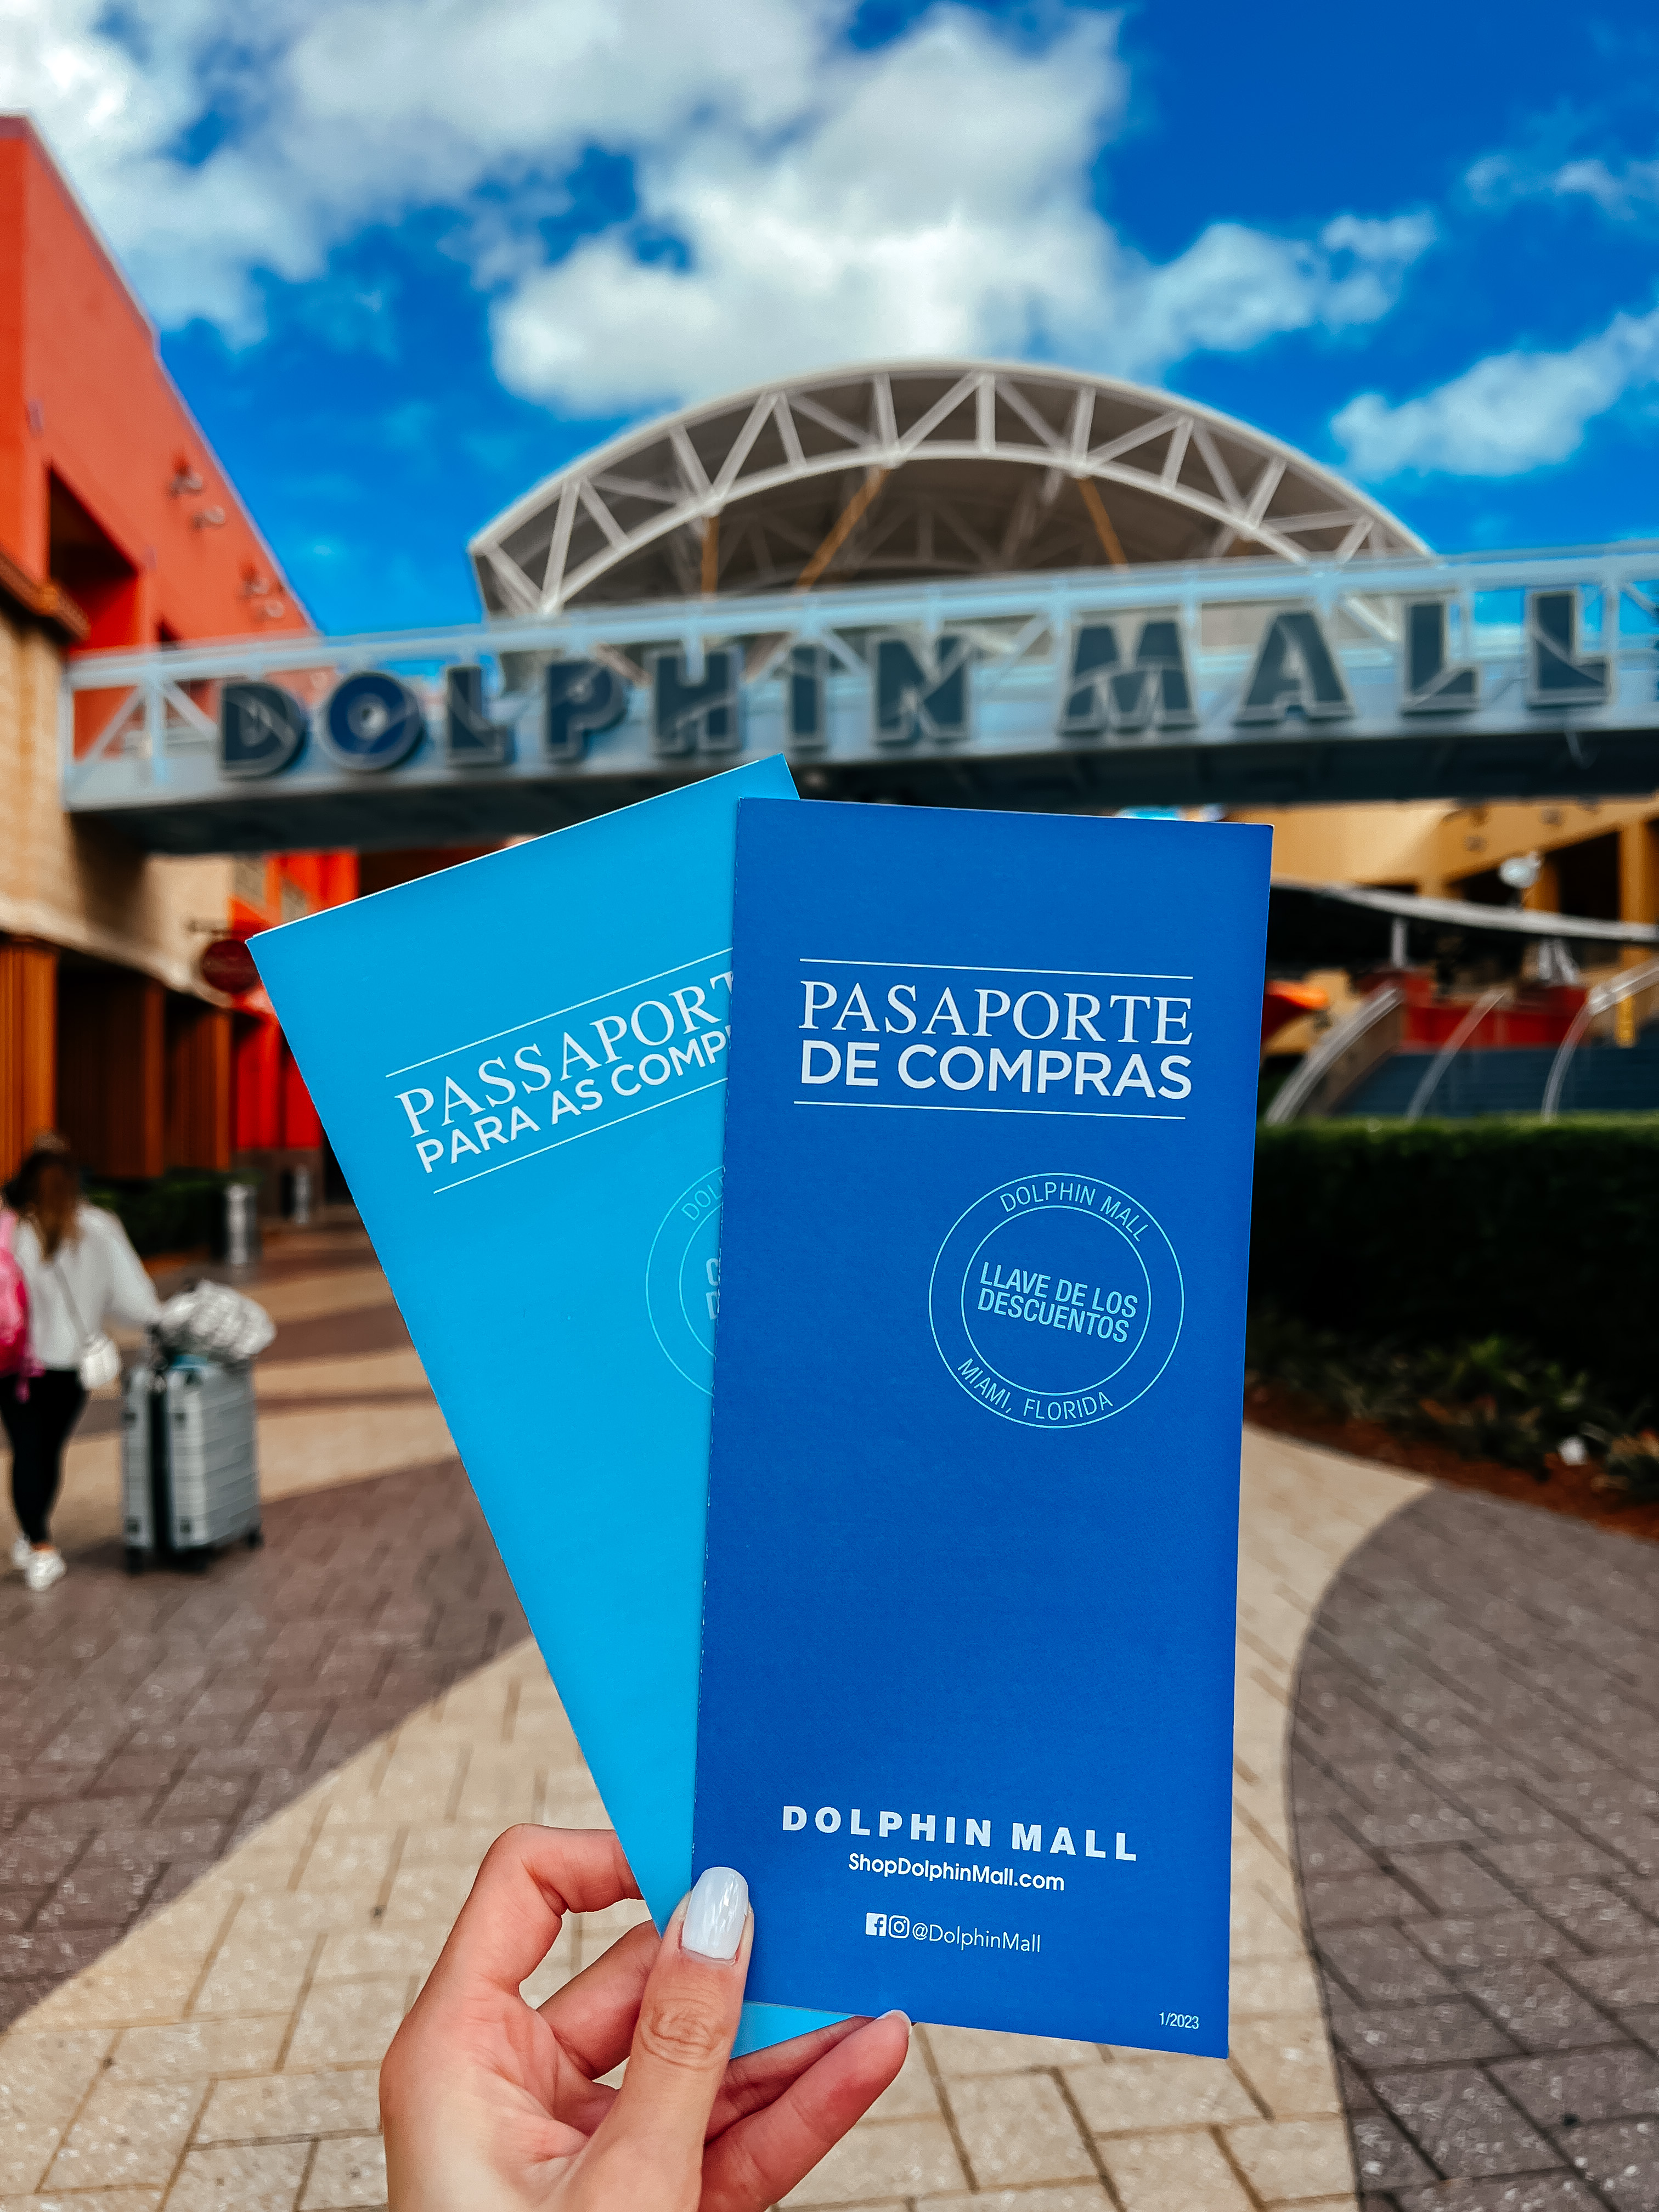 Dolphin Mall - The Miami Guide